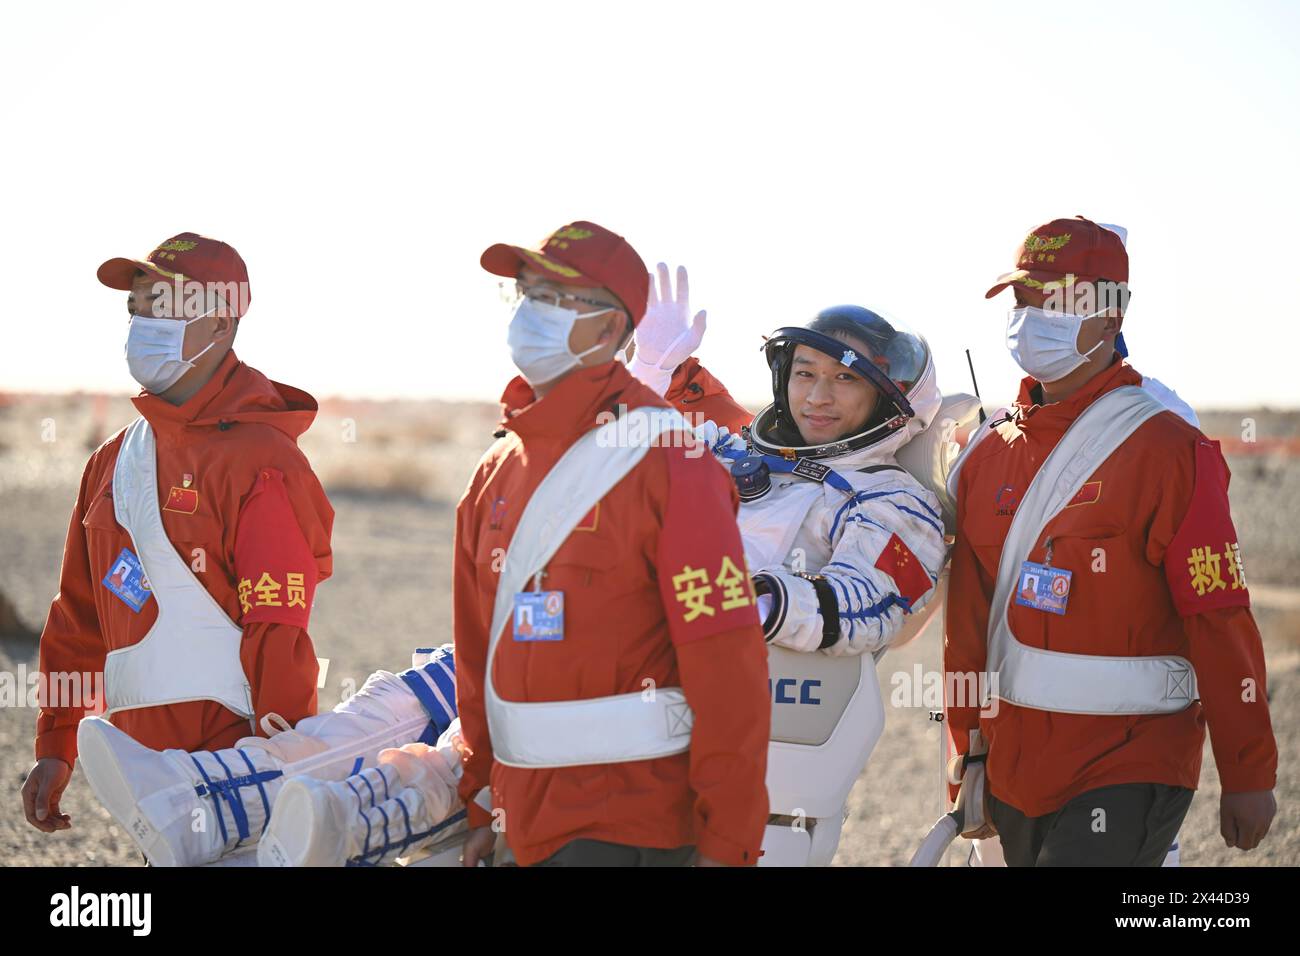 Sito di atterraggio di Dongfeng. 30 aprile 2024. L'astronauta Jiang Xinlin è fuori dalla capsula di ritorno della navicella spaziale con equipaggio Shenzhou-17 presso il sito di atterraggio di Dongfeng nella regione autonoma della Mongolia interna della Cina settentrionale, il 30 aprile 2024. La capsula di ritorno della navicella spaziale Shenzhou-17 con equipaggio, che trasporta gli astronauti Tang Hongbo, Tang Shengjie e Jiang Xinlin, è atterrata martedì presso il sito di atterraggio di Dongfeng nella regione autonoma della Mongolia interna della Cina settentrionale. I tre astronauti sono tutti in buone condizioni di salute, secondo la China Manned Space Agency. Crediti: Lian Zhen/Xinhua/Alamy Live News Foto Stock